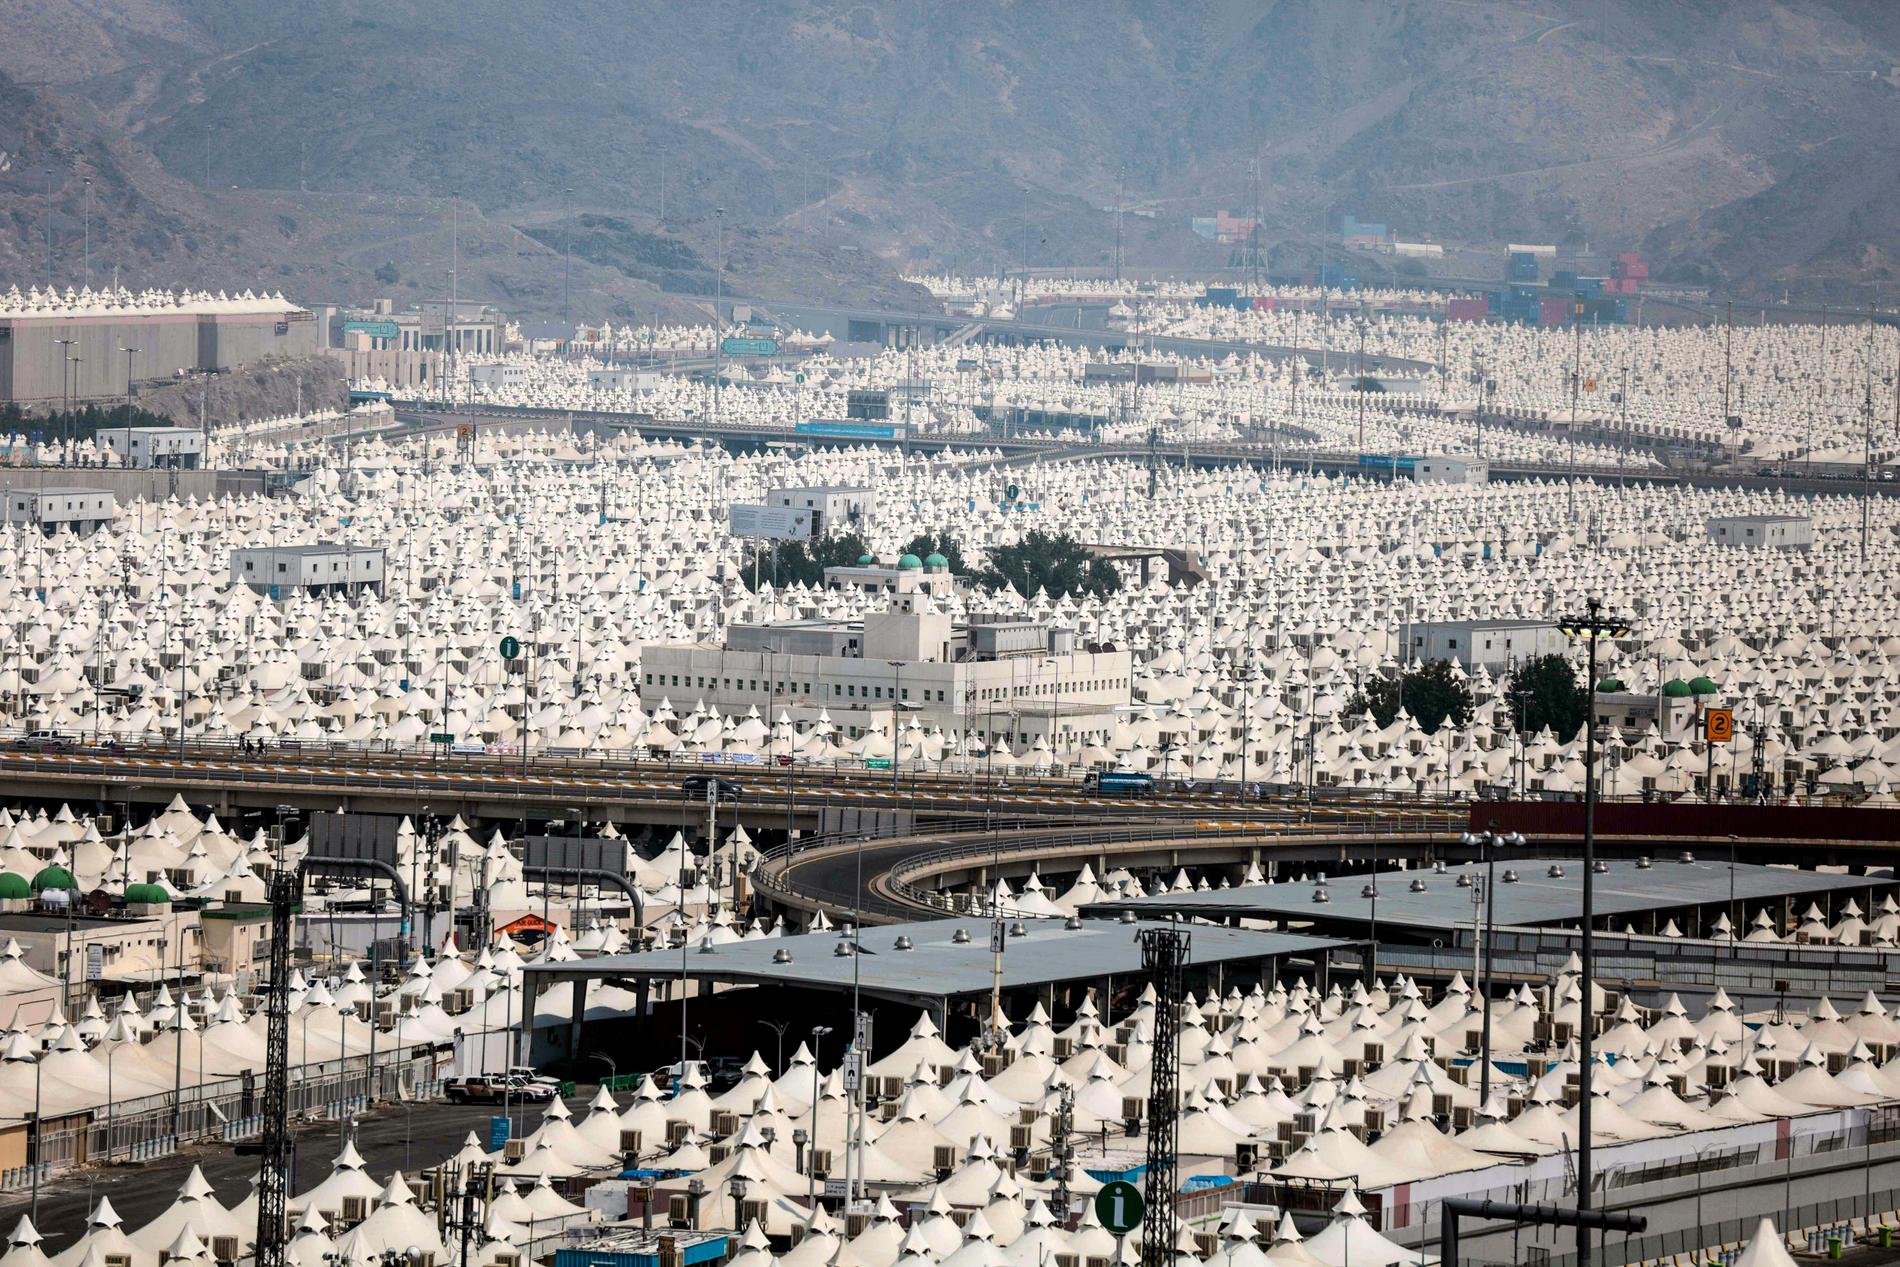 Tältstaden i Mina i utkanten av Mecka där 160 000 av pilgrimerna bor under hajj.